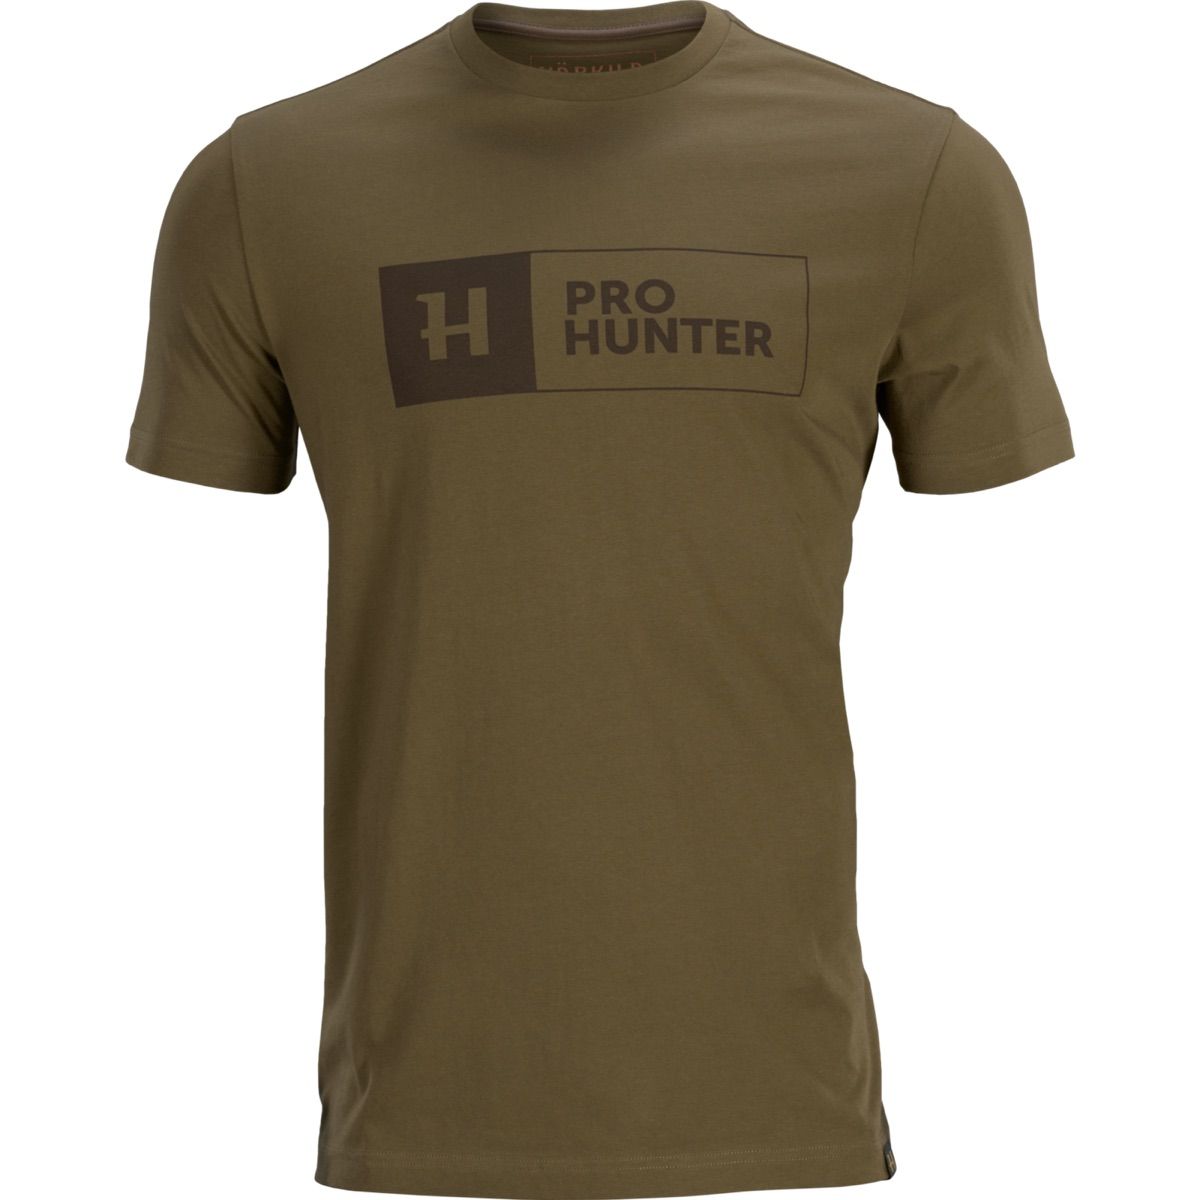 Härkila Pro Hunter S/S T-Shirt Light Willow Green